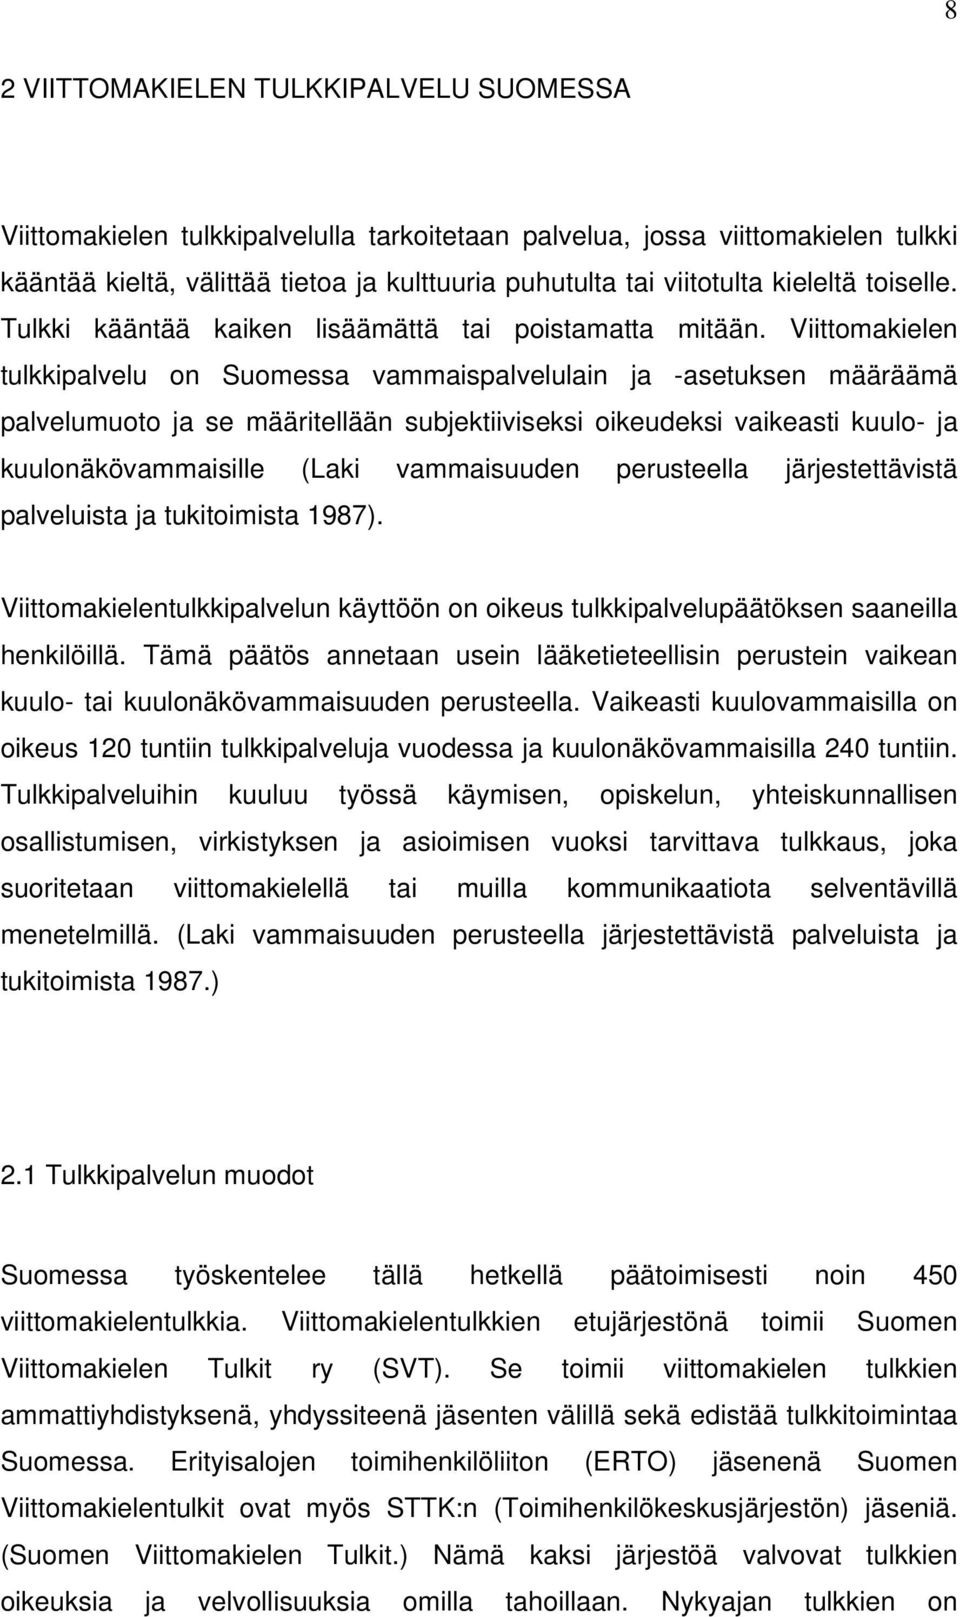 Viittomakielen tulkkipalvelu on Suomessa vammaispalvelulain ja -asetuksen määräämä palvelumuoto ja se määritellään subjektiiviseksi oikeudeksi vaikeasti kuulo- ja kuulonäkövammaisille (Laki